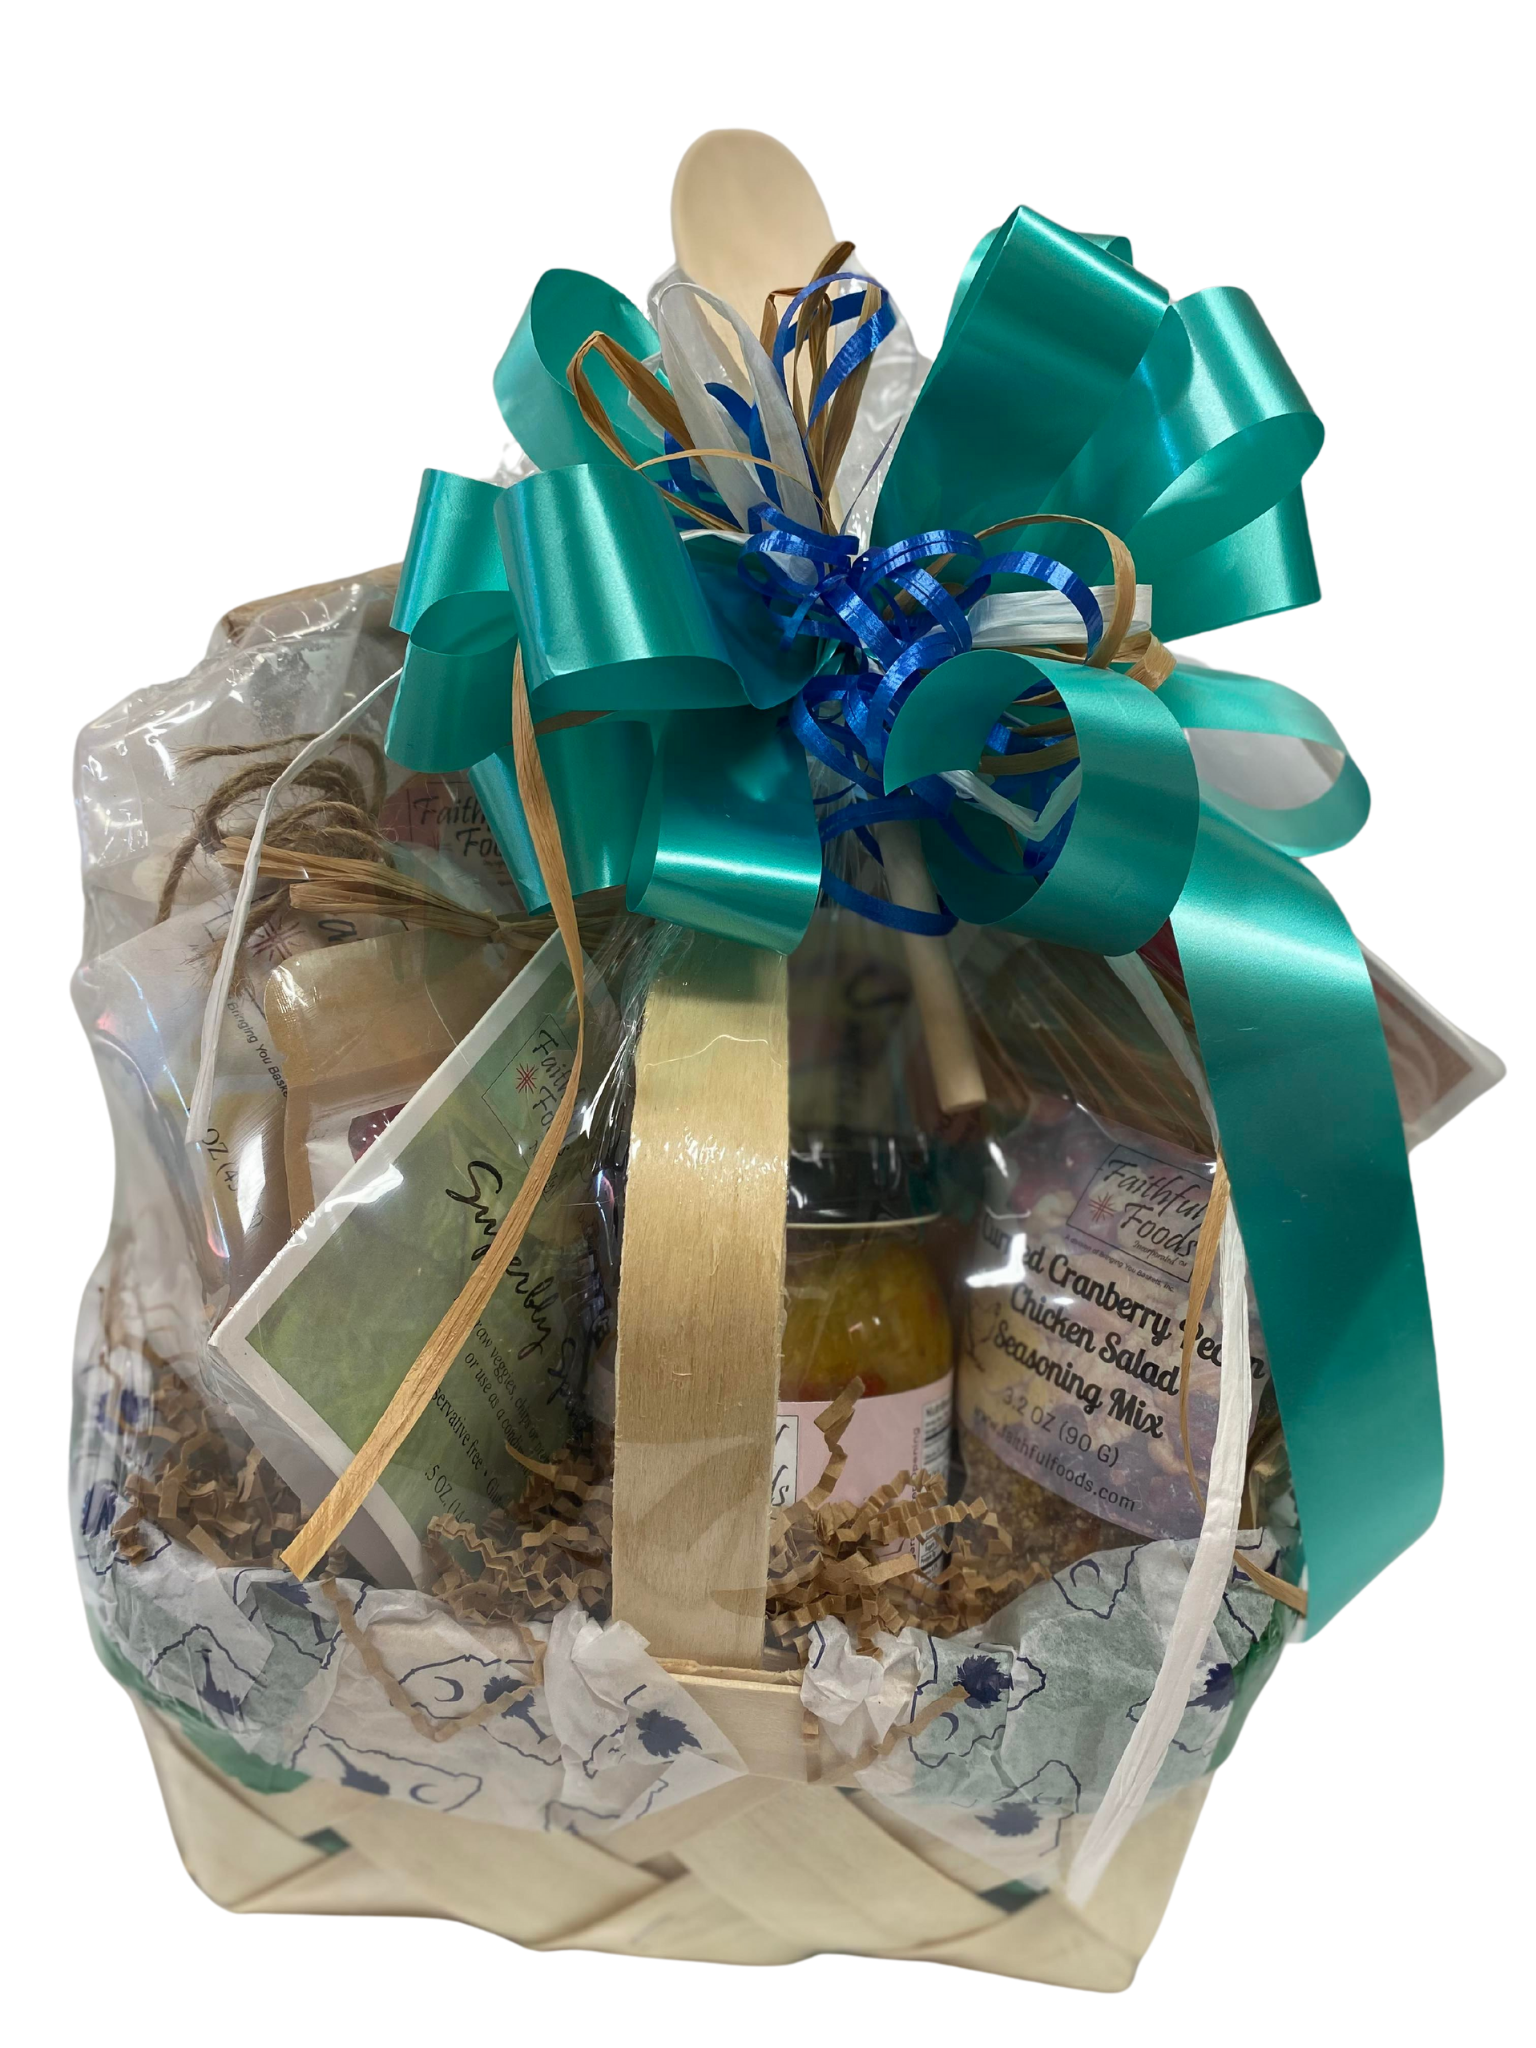 The Southern Sampler Gift Basket